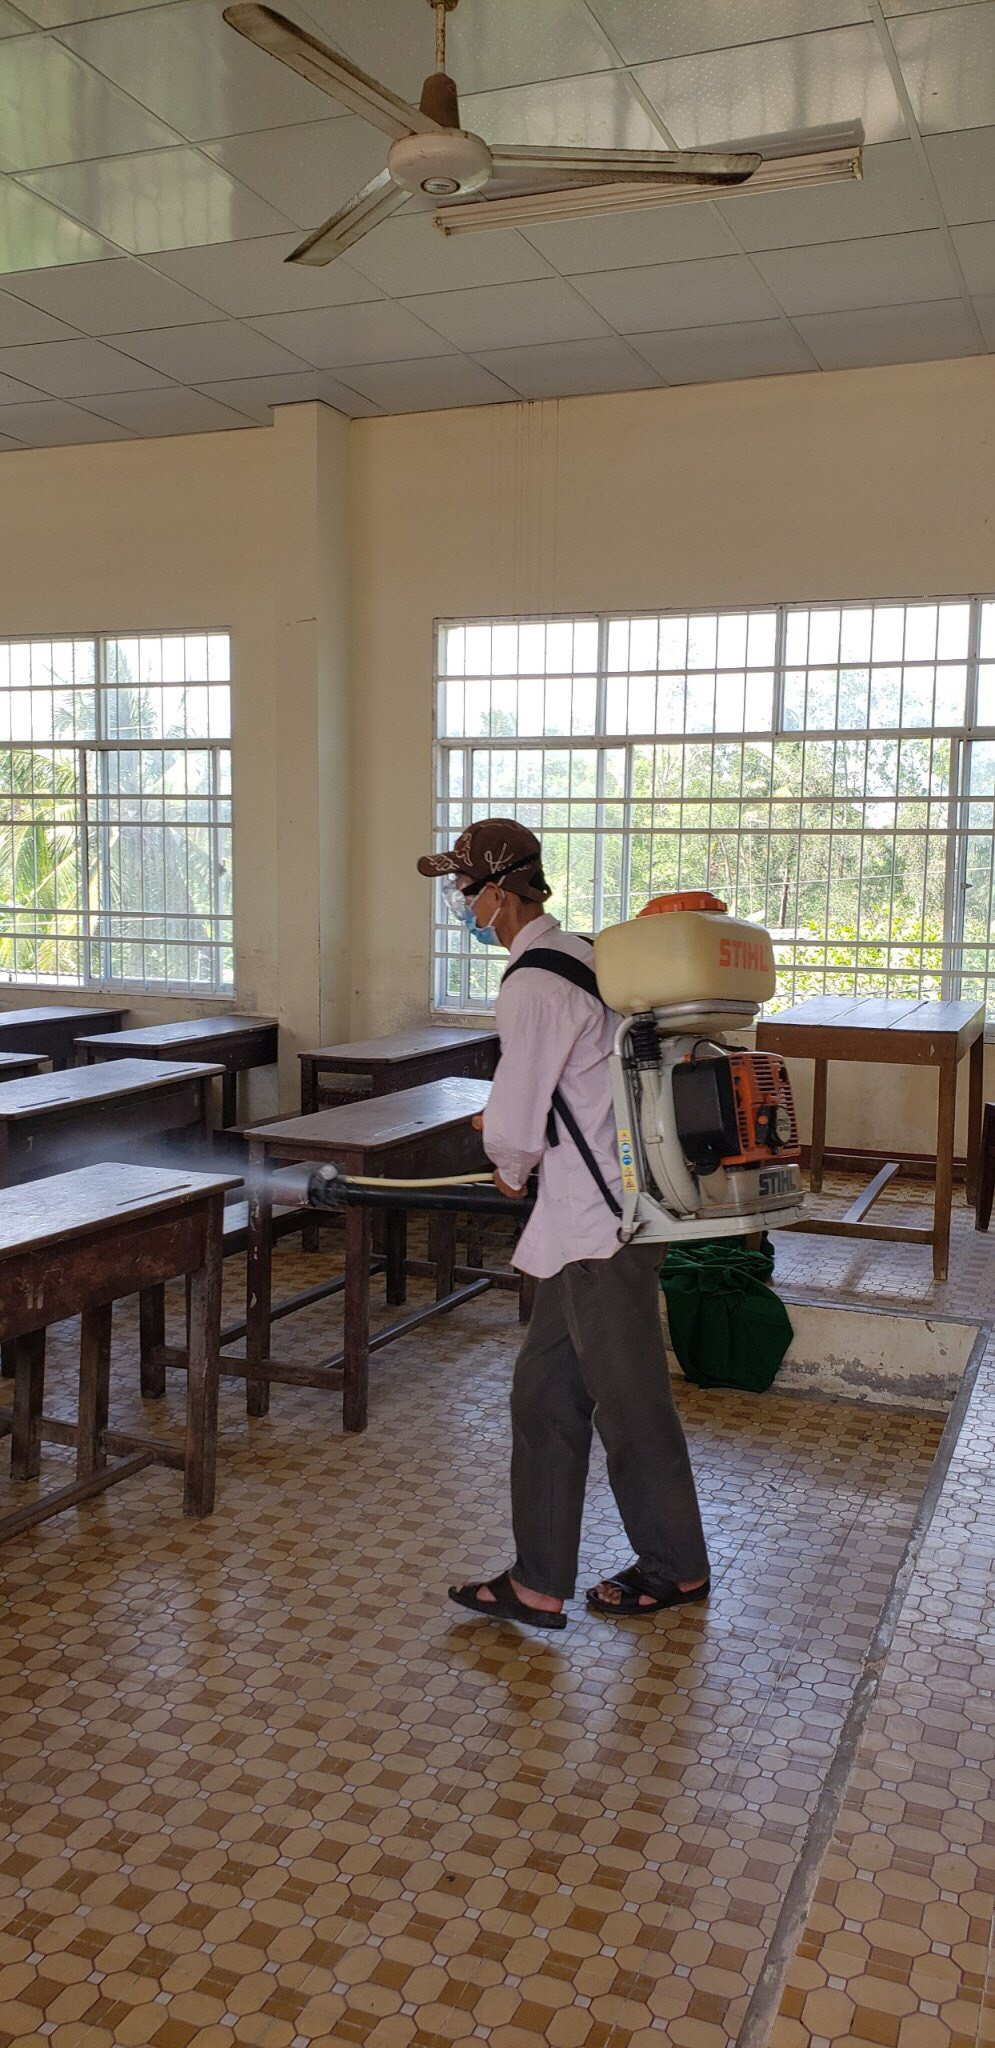 Học sinh Cà Mau ngồi cách nhau 2 mét trong ngày trở lại trường sau nghỉ dịch covid-19